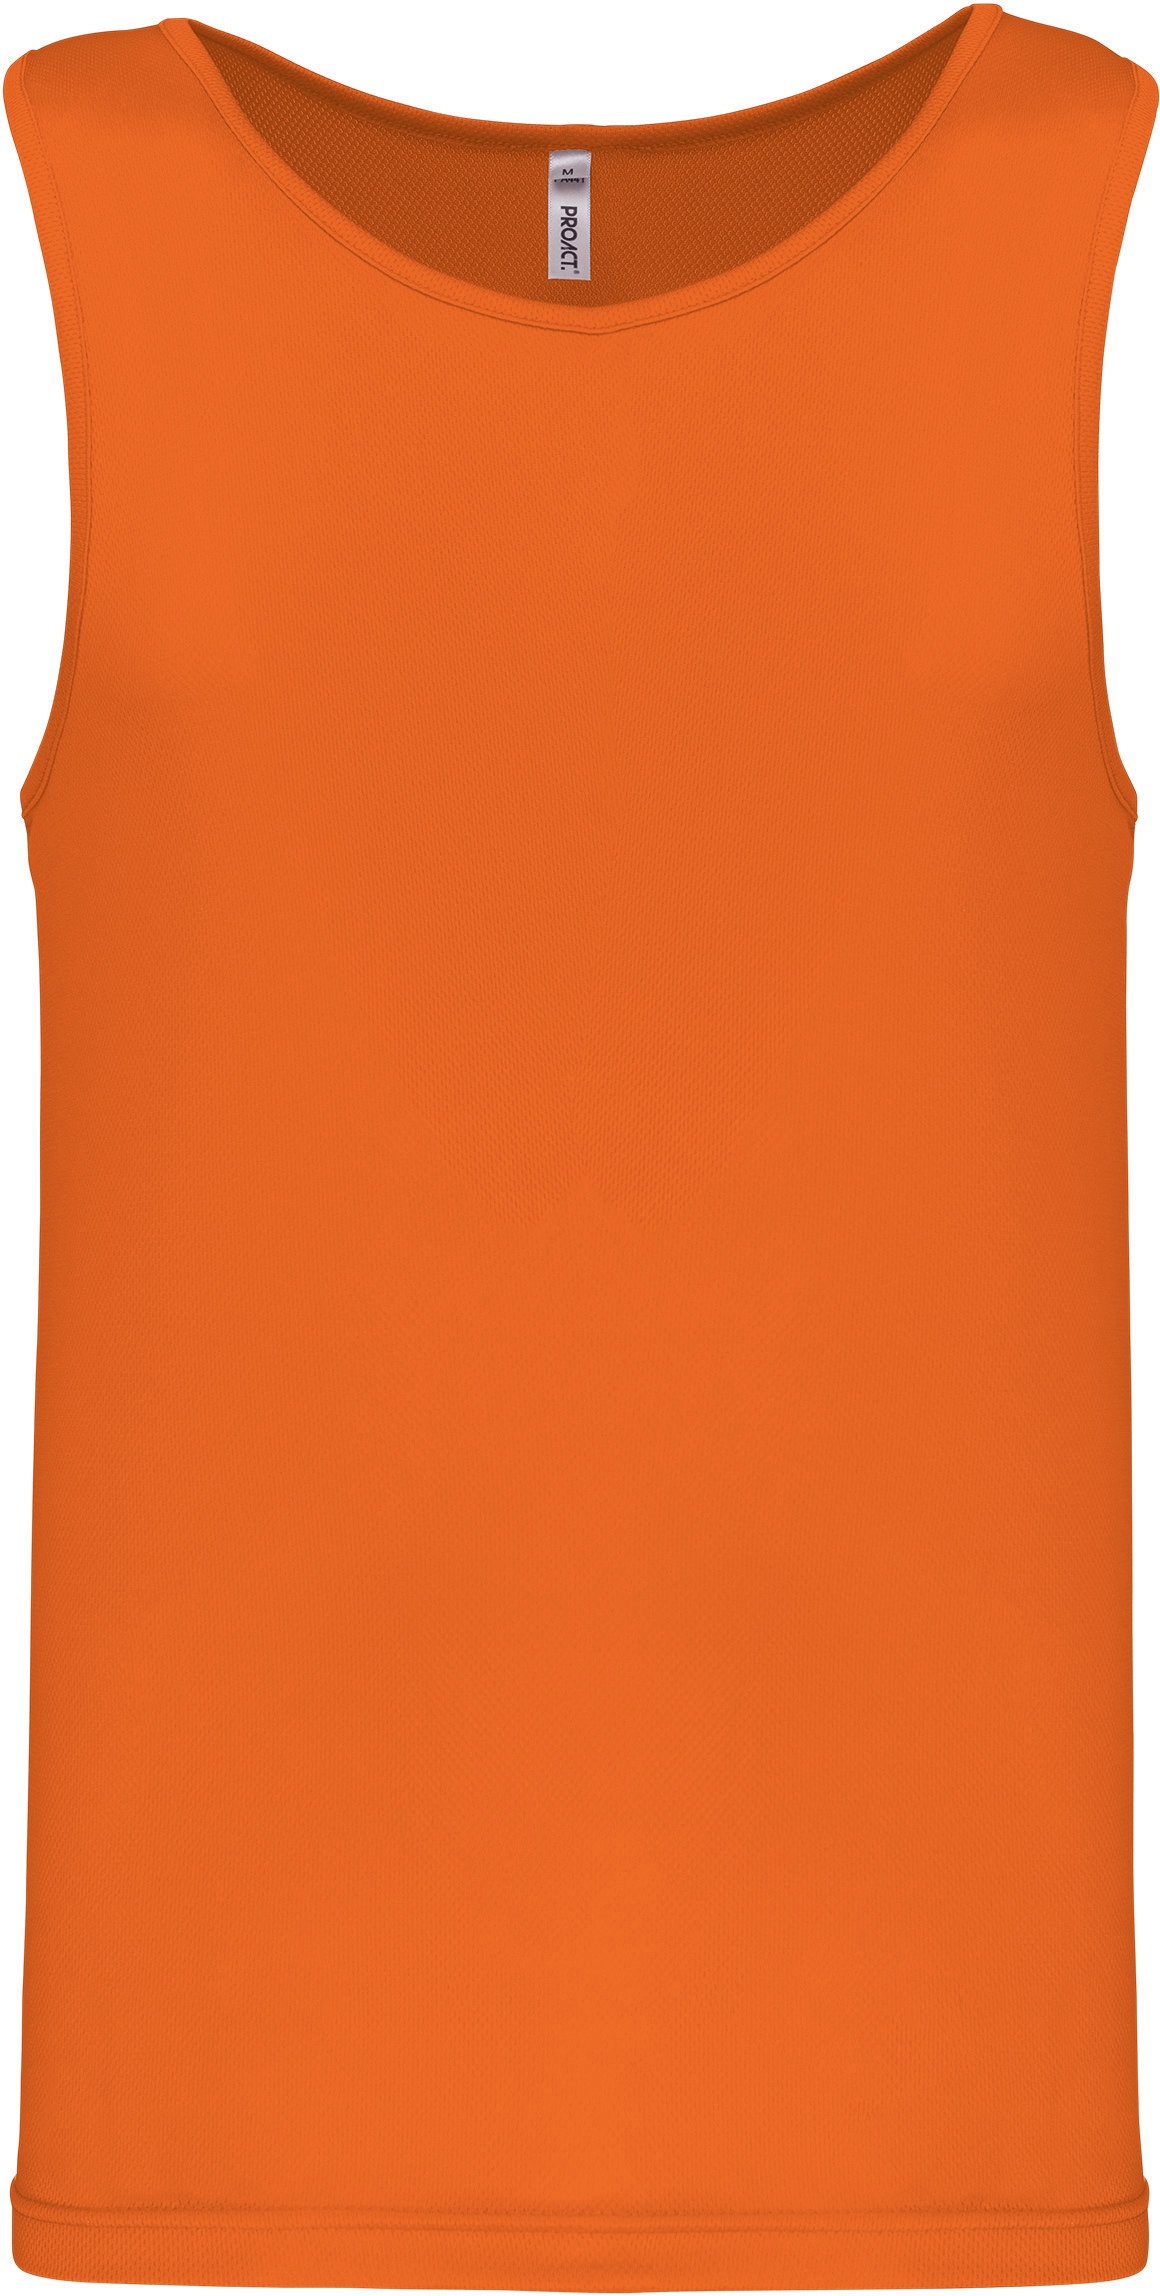 Pánské funkční tílko Barva: neon orange, Velikost: M